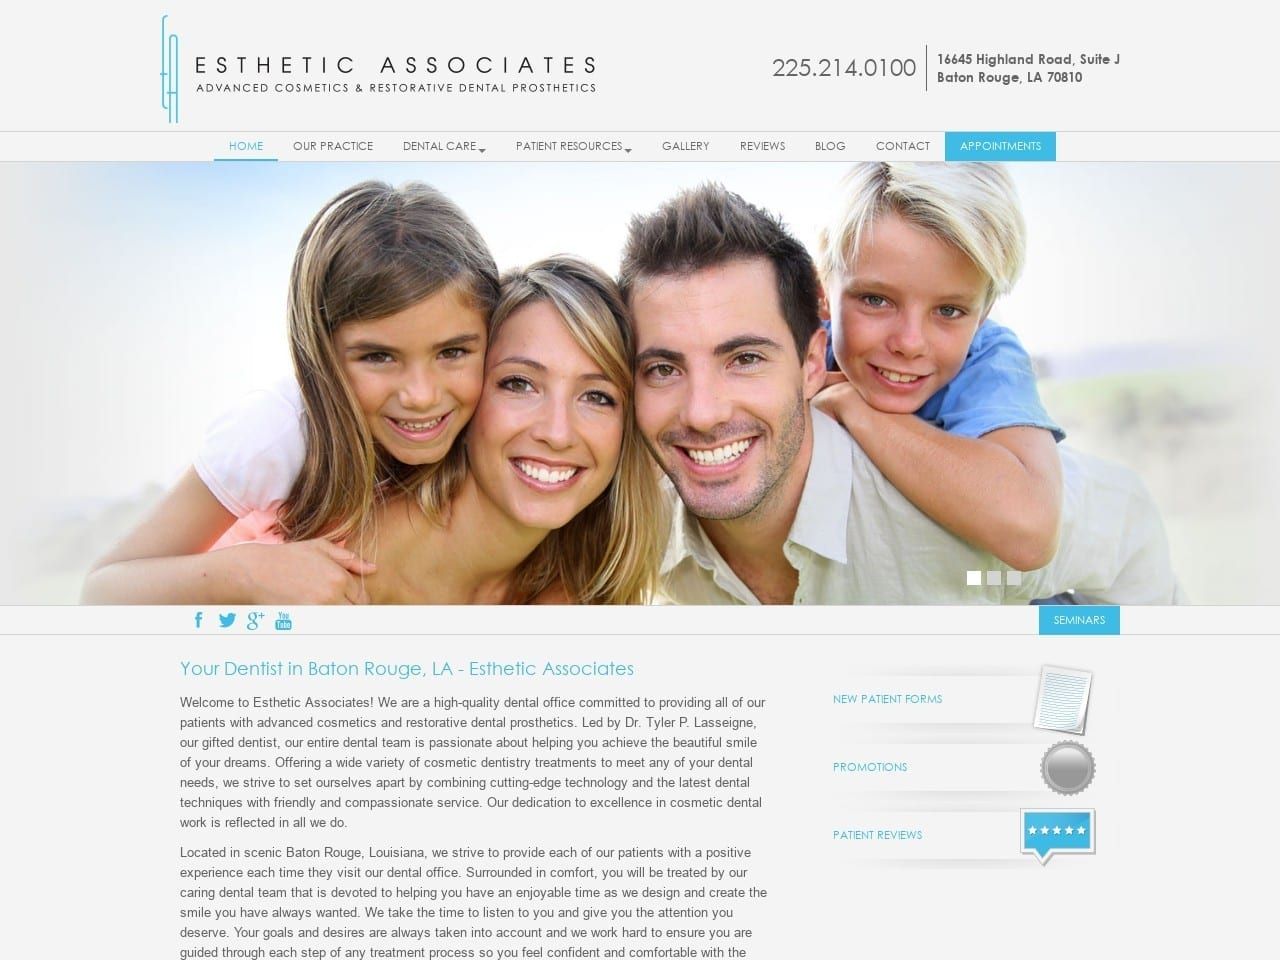 Esthetic Associates Website Screenshot from estheticassociates.com